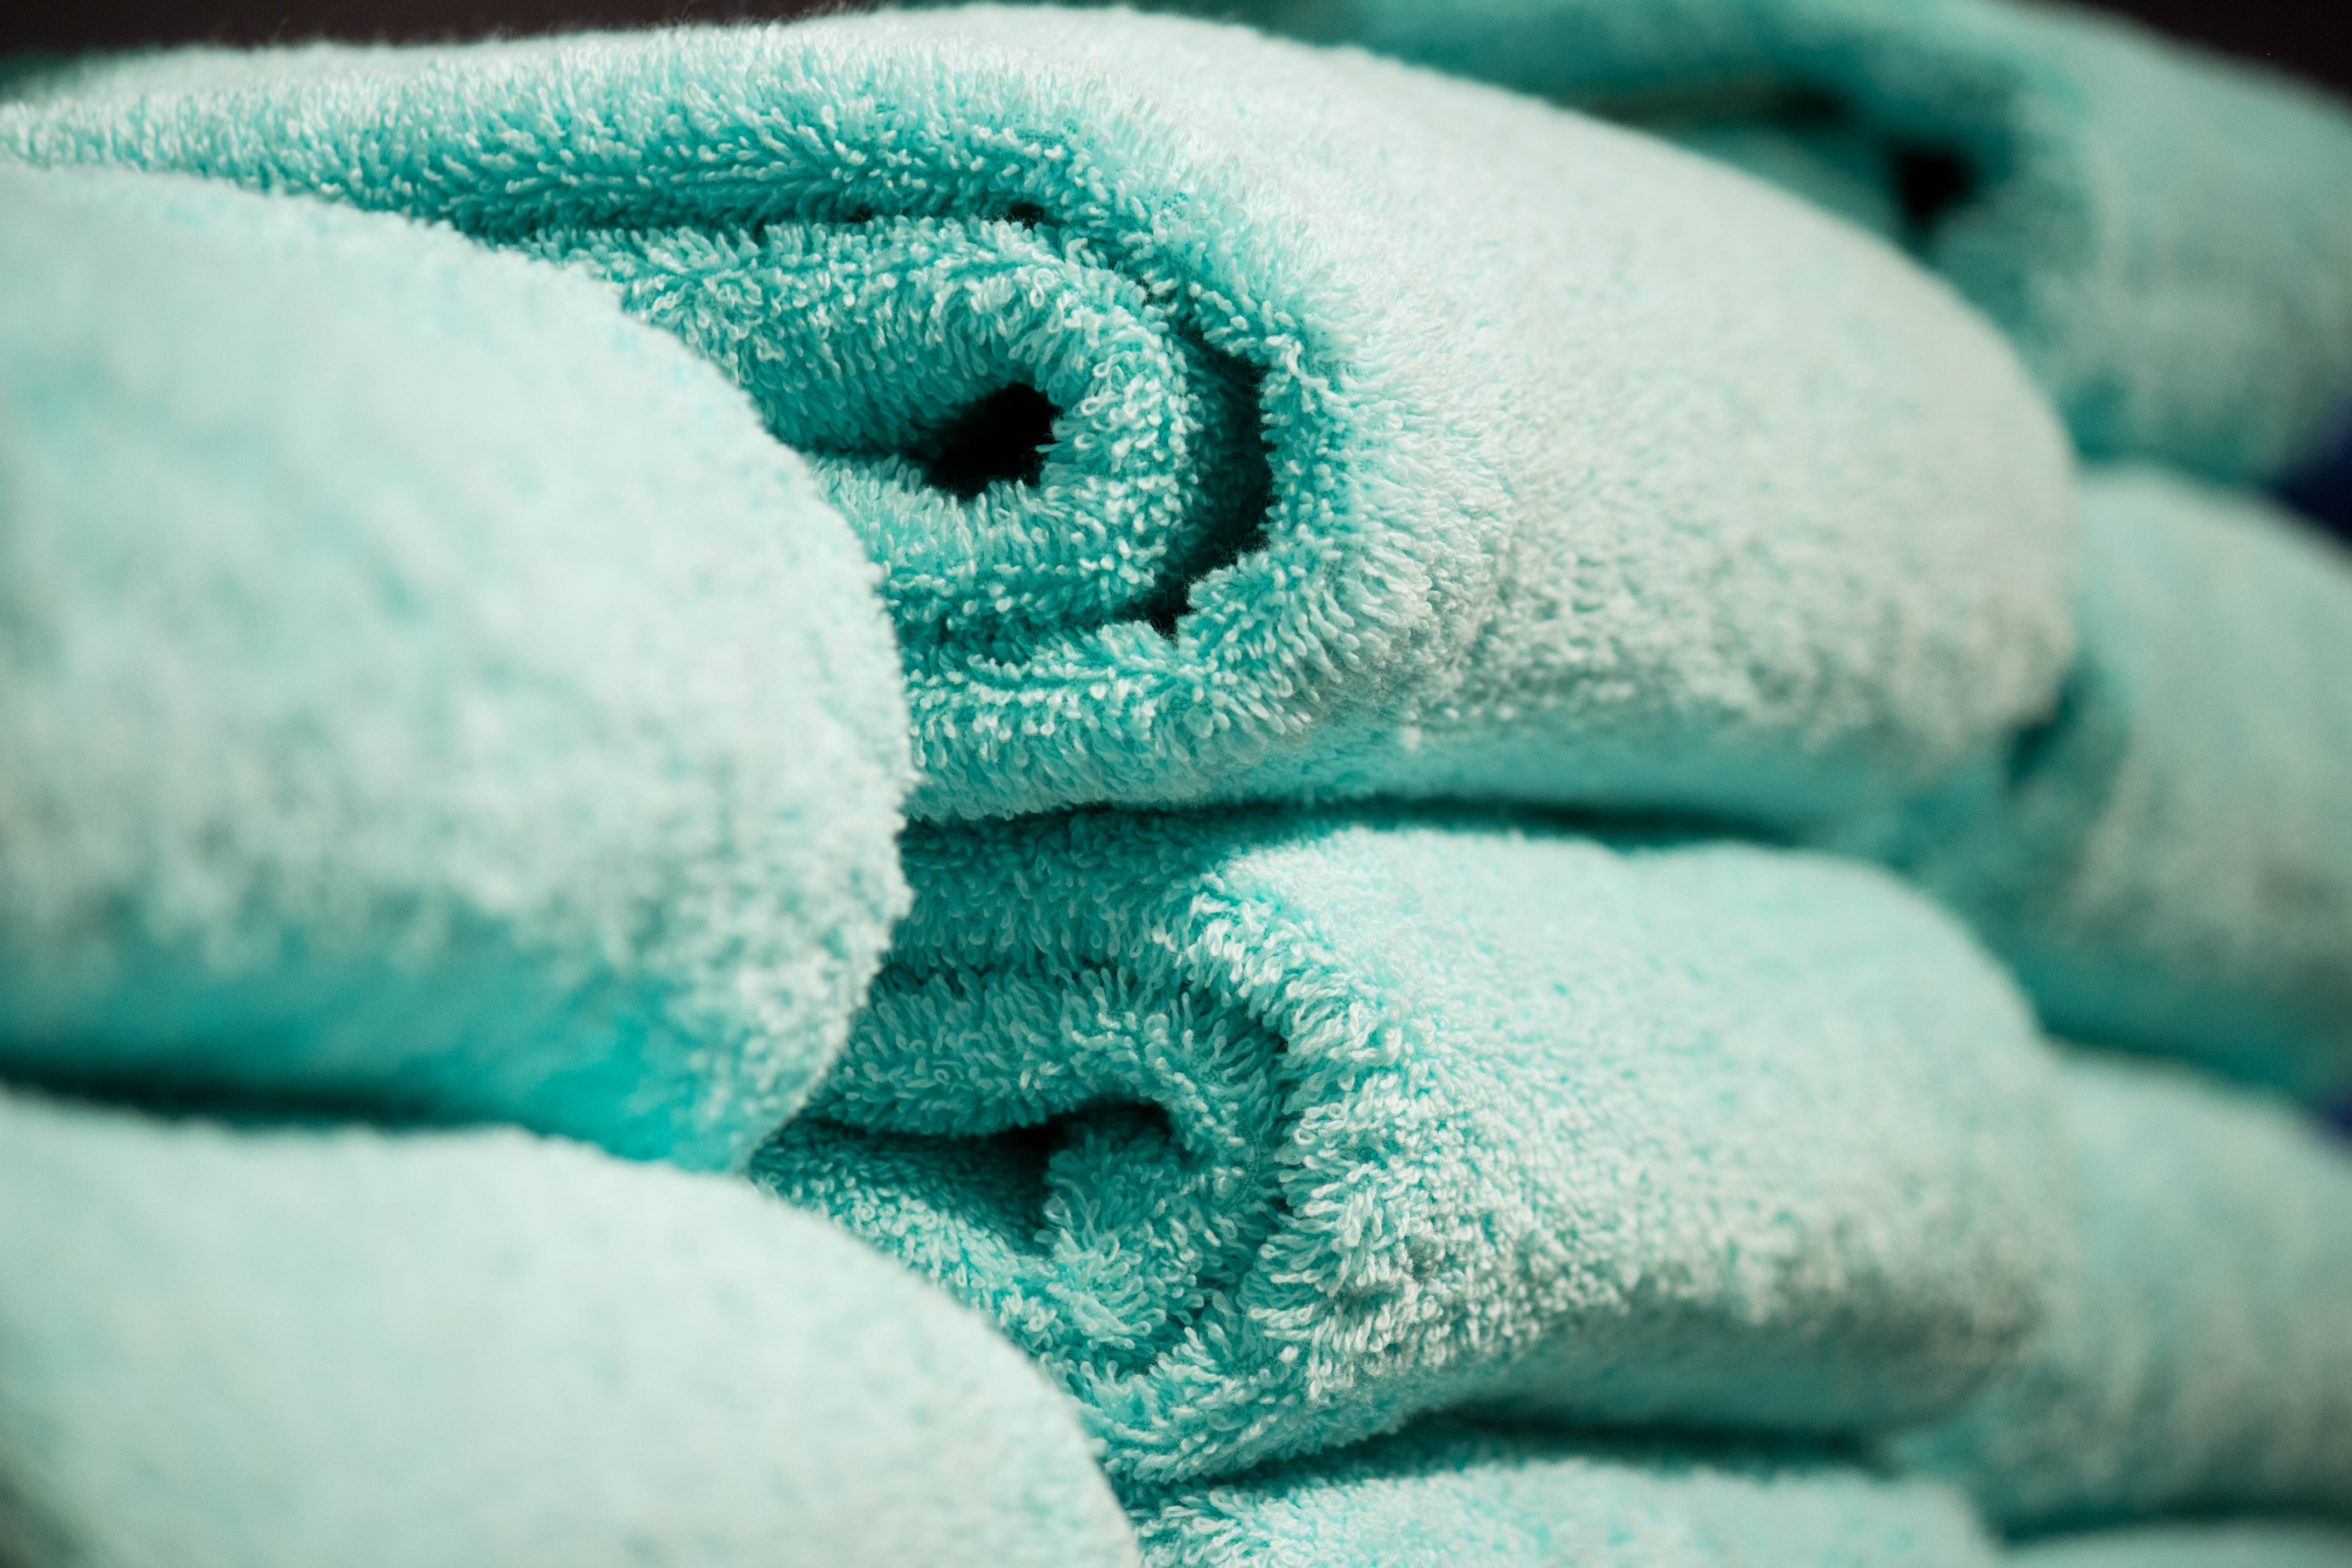 Listo castigo Farmacología Trucos para eliminar el olor a humedad de las toallas de baño